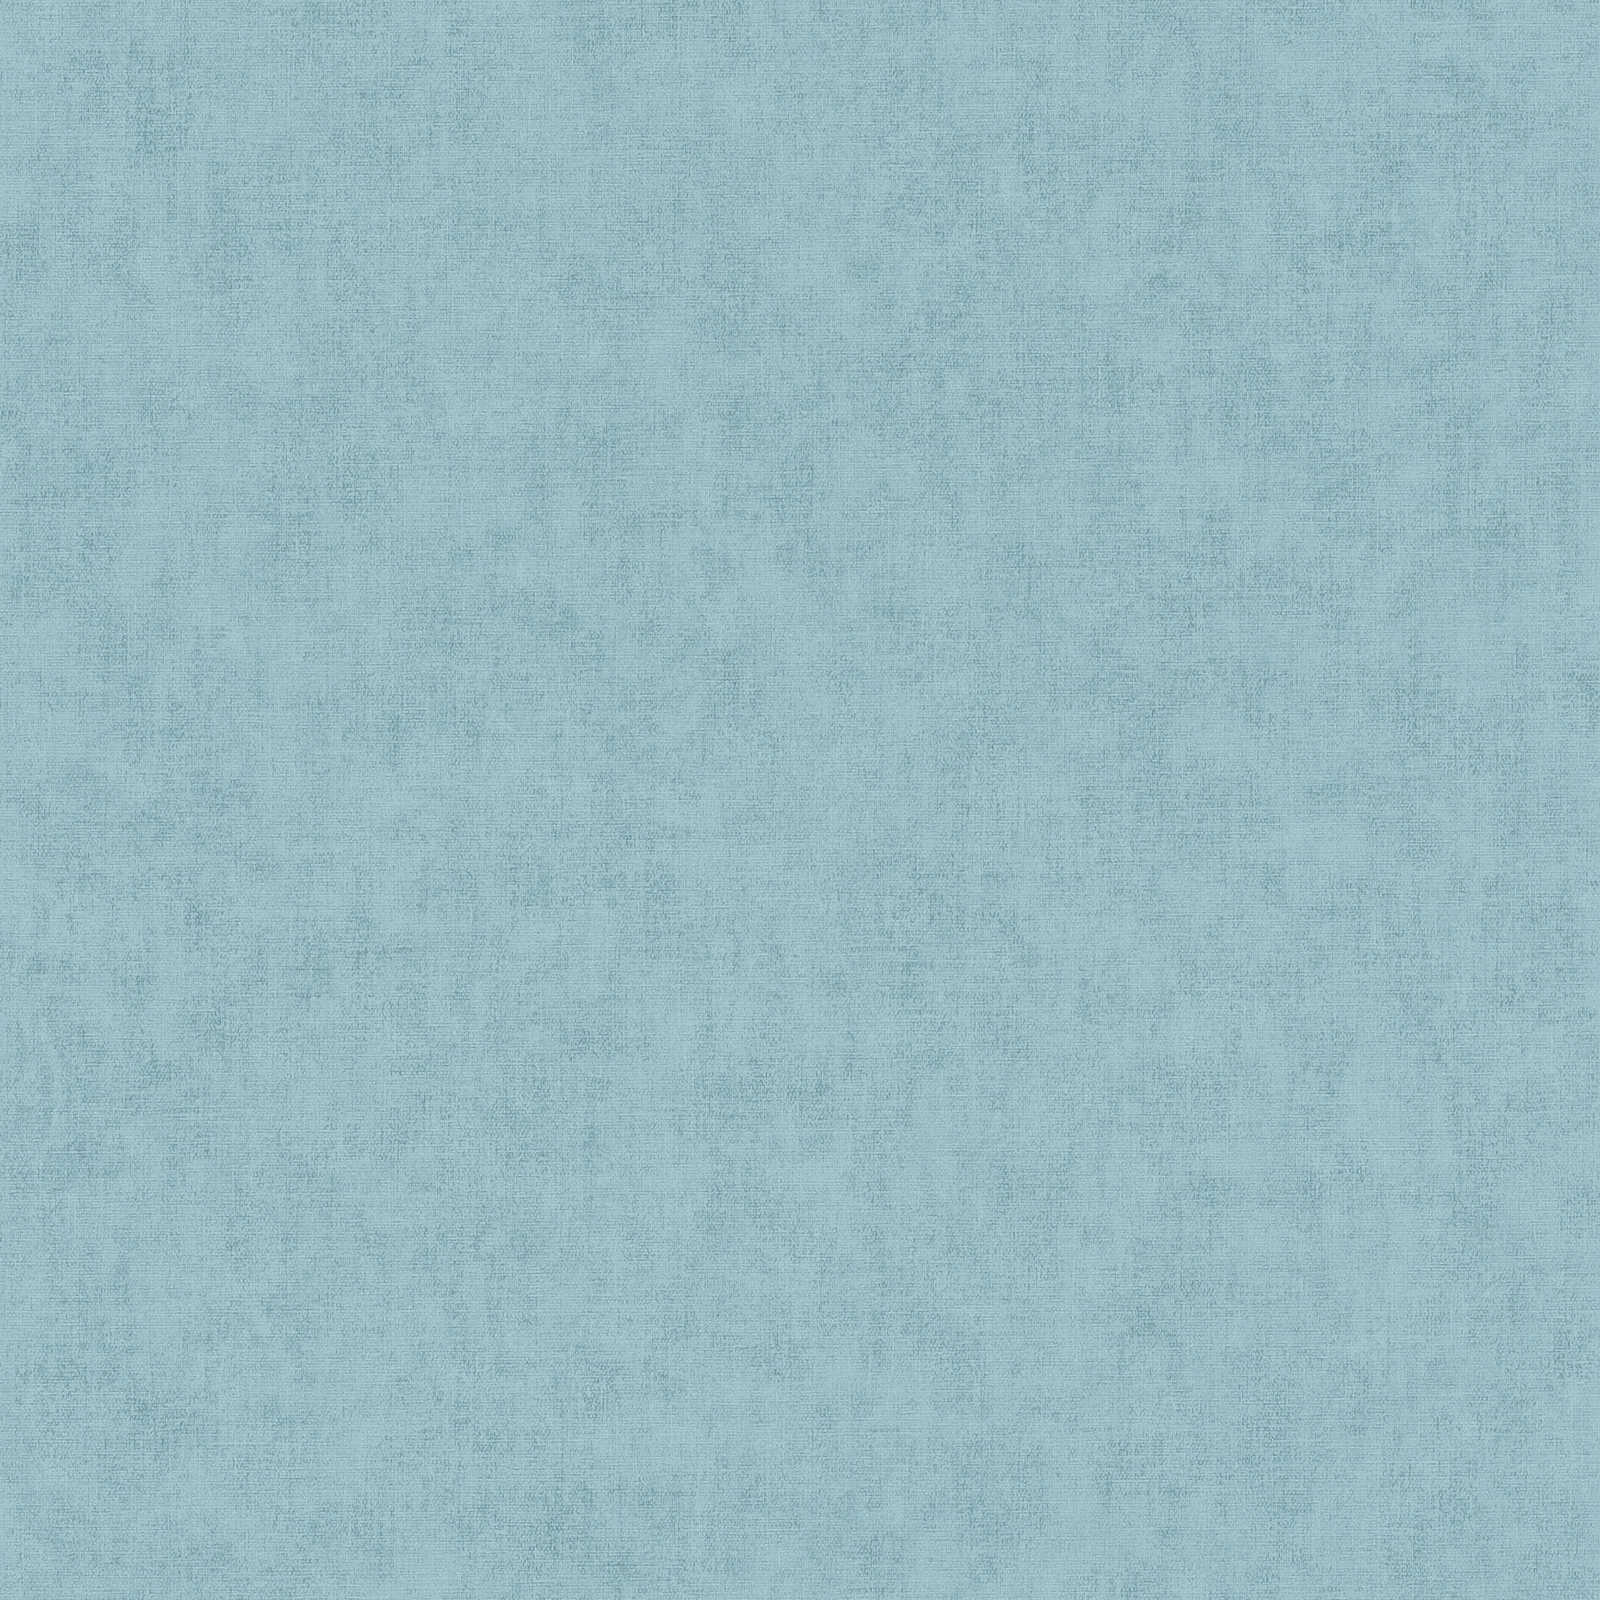 Wallpaper plain, linen look & Scandinavian style - Blue
